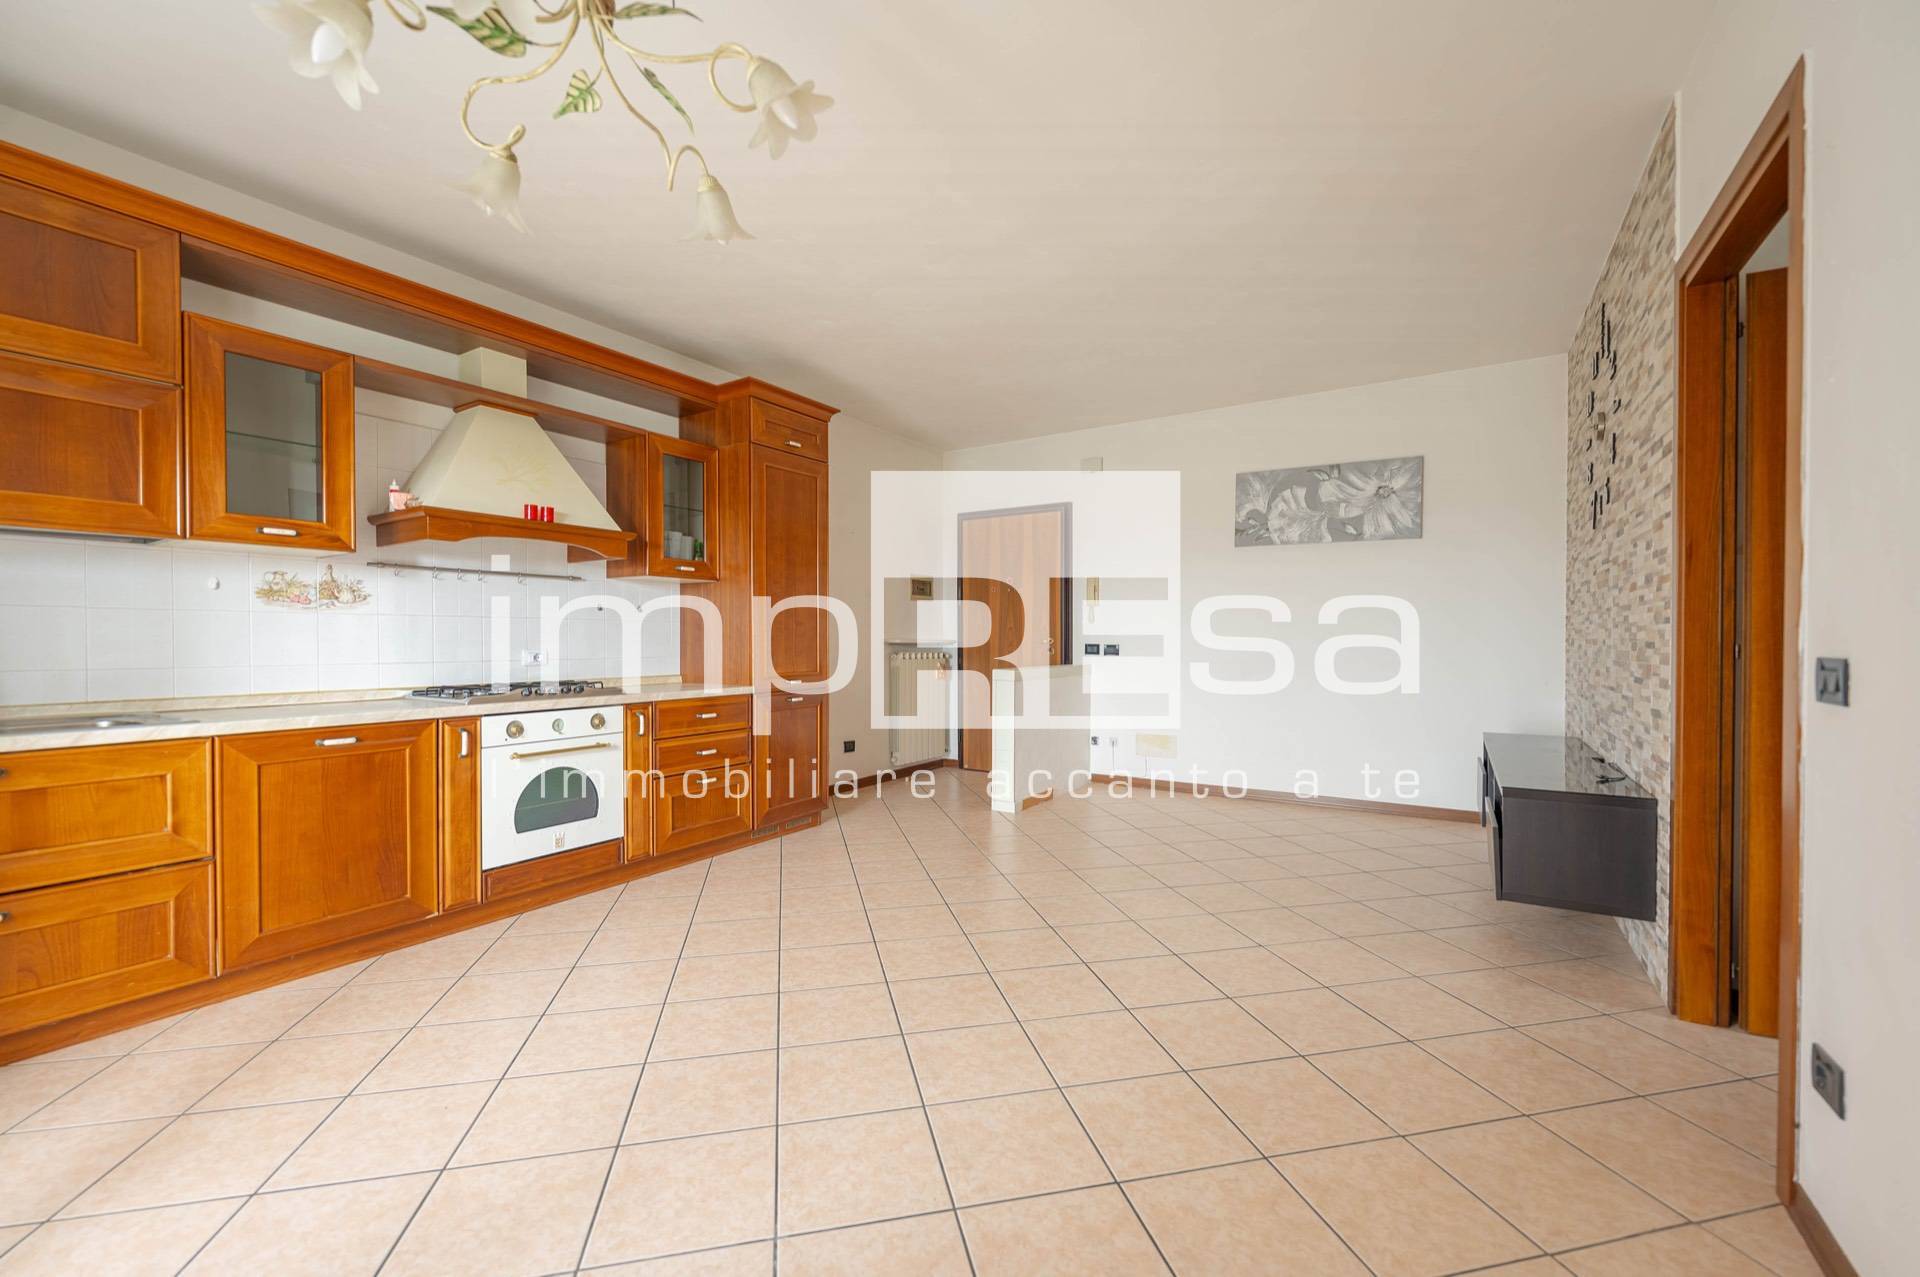 Appartamento in vendita a Vazzola, 4 locali, prezzo € 150.000 | PortaleAgenzieImmobiliari.it